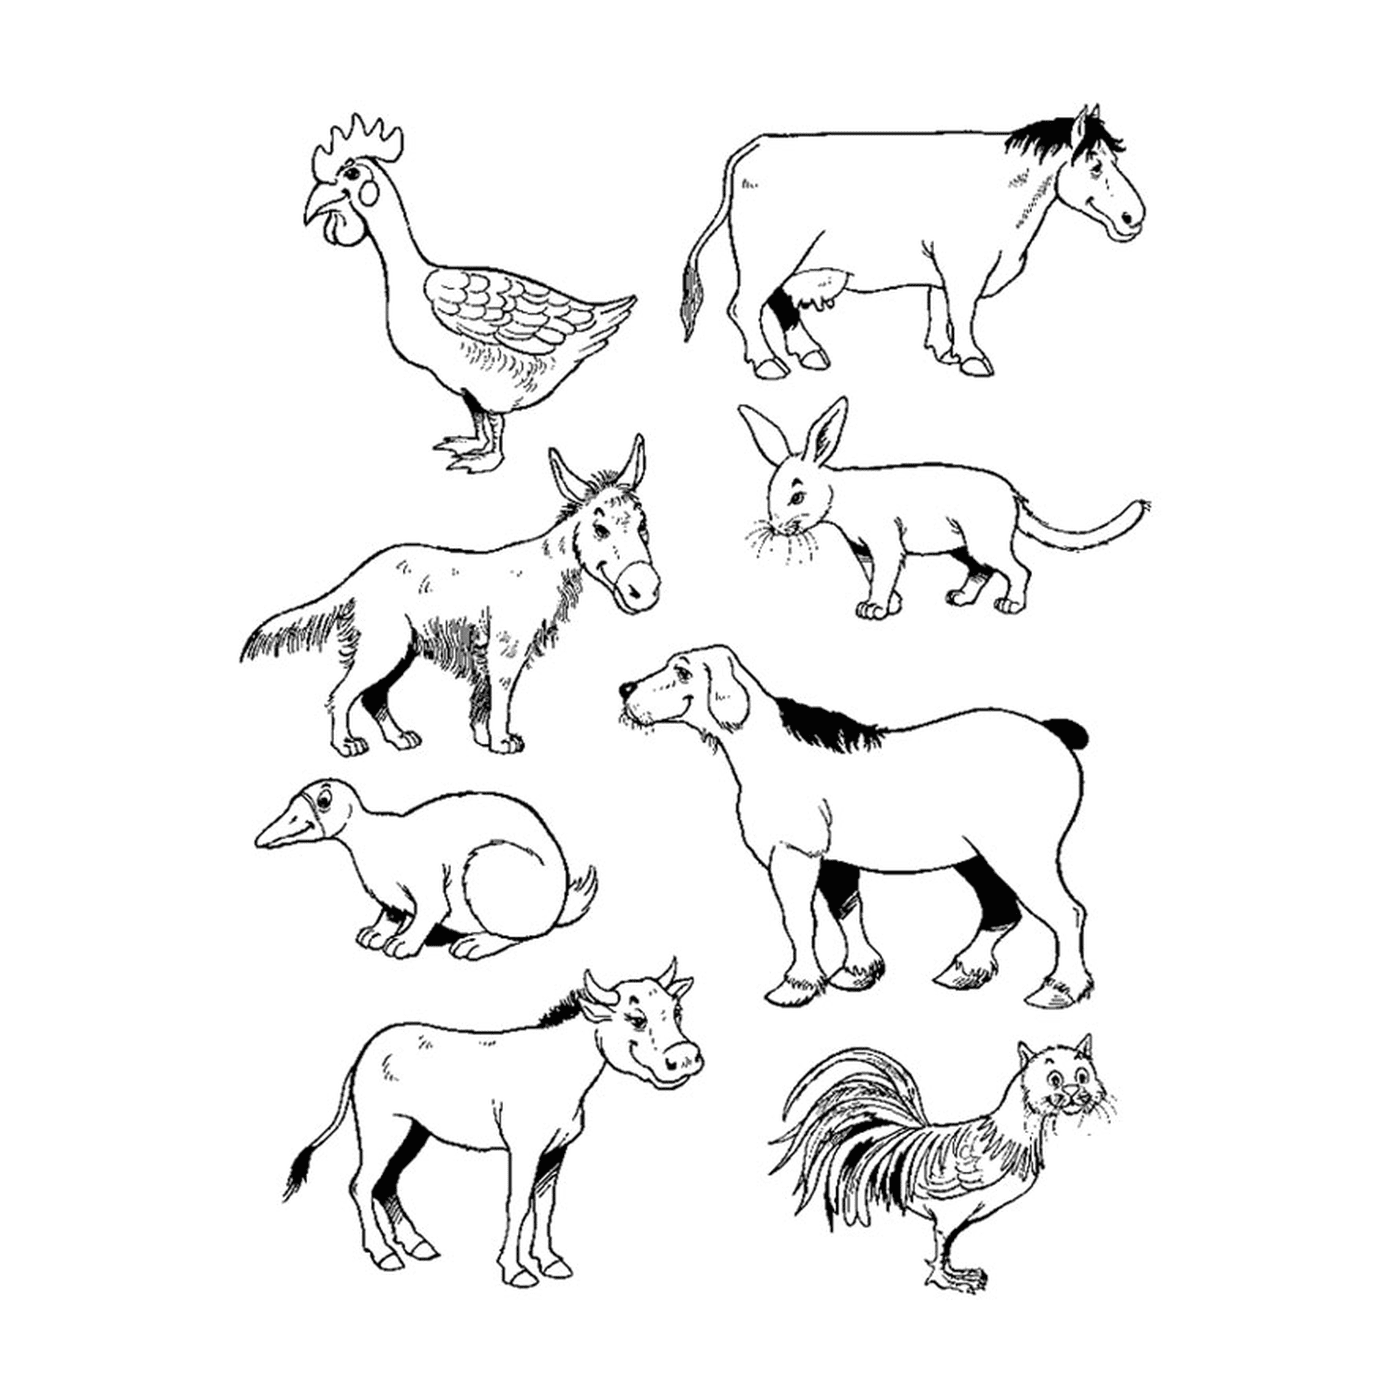  مجموعة من حيوانات المزرعة 